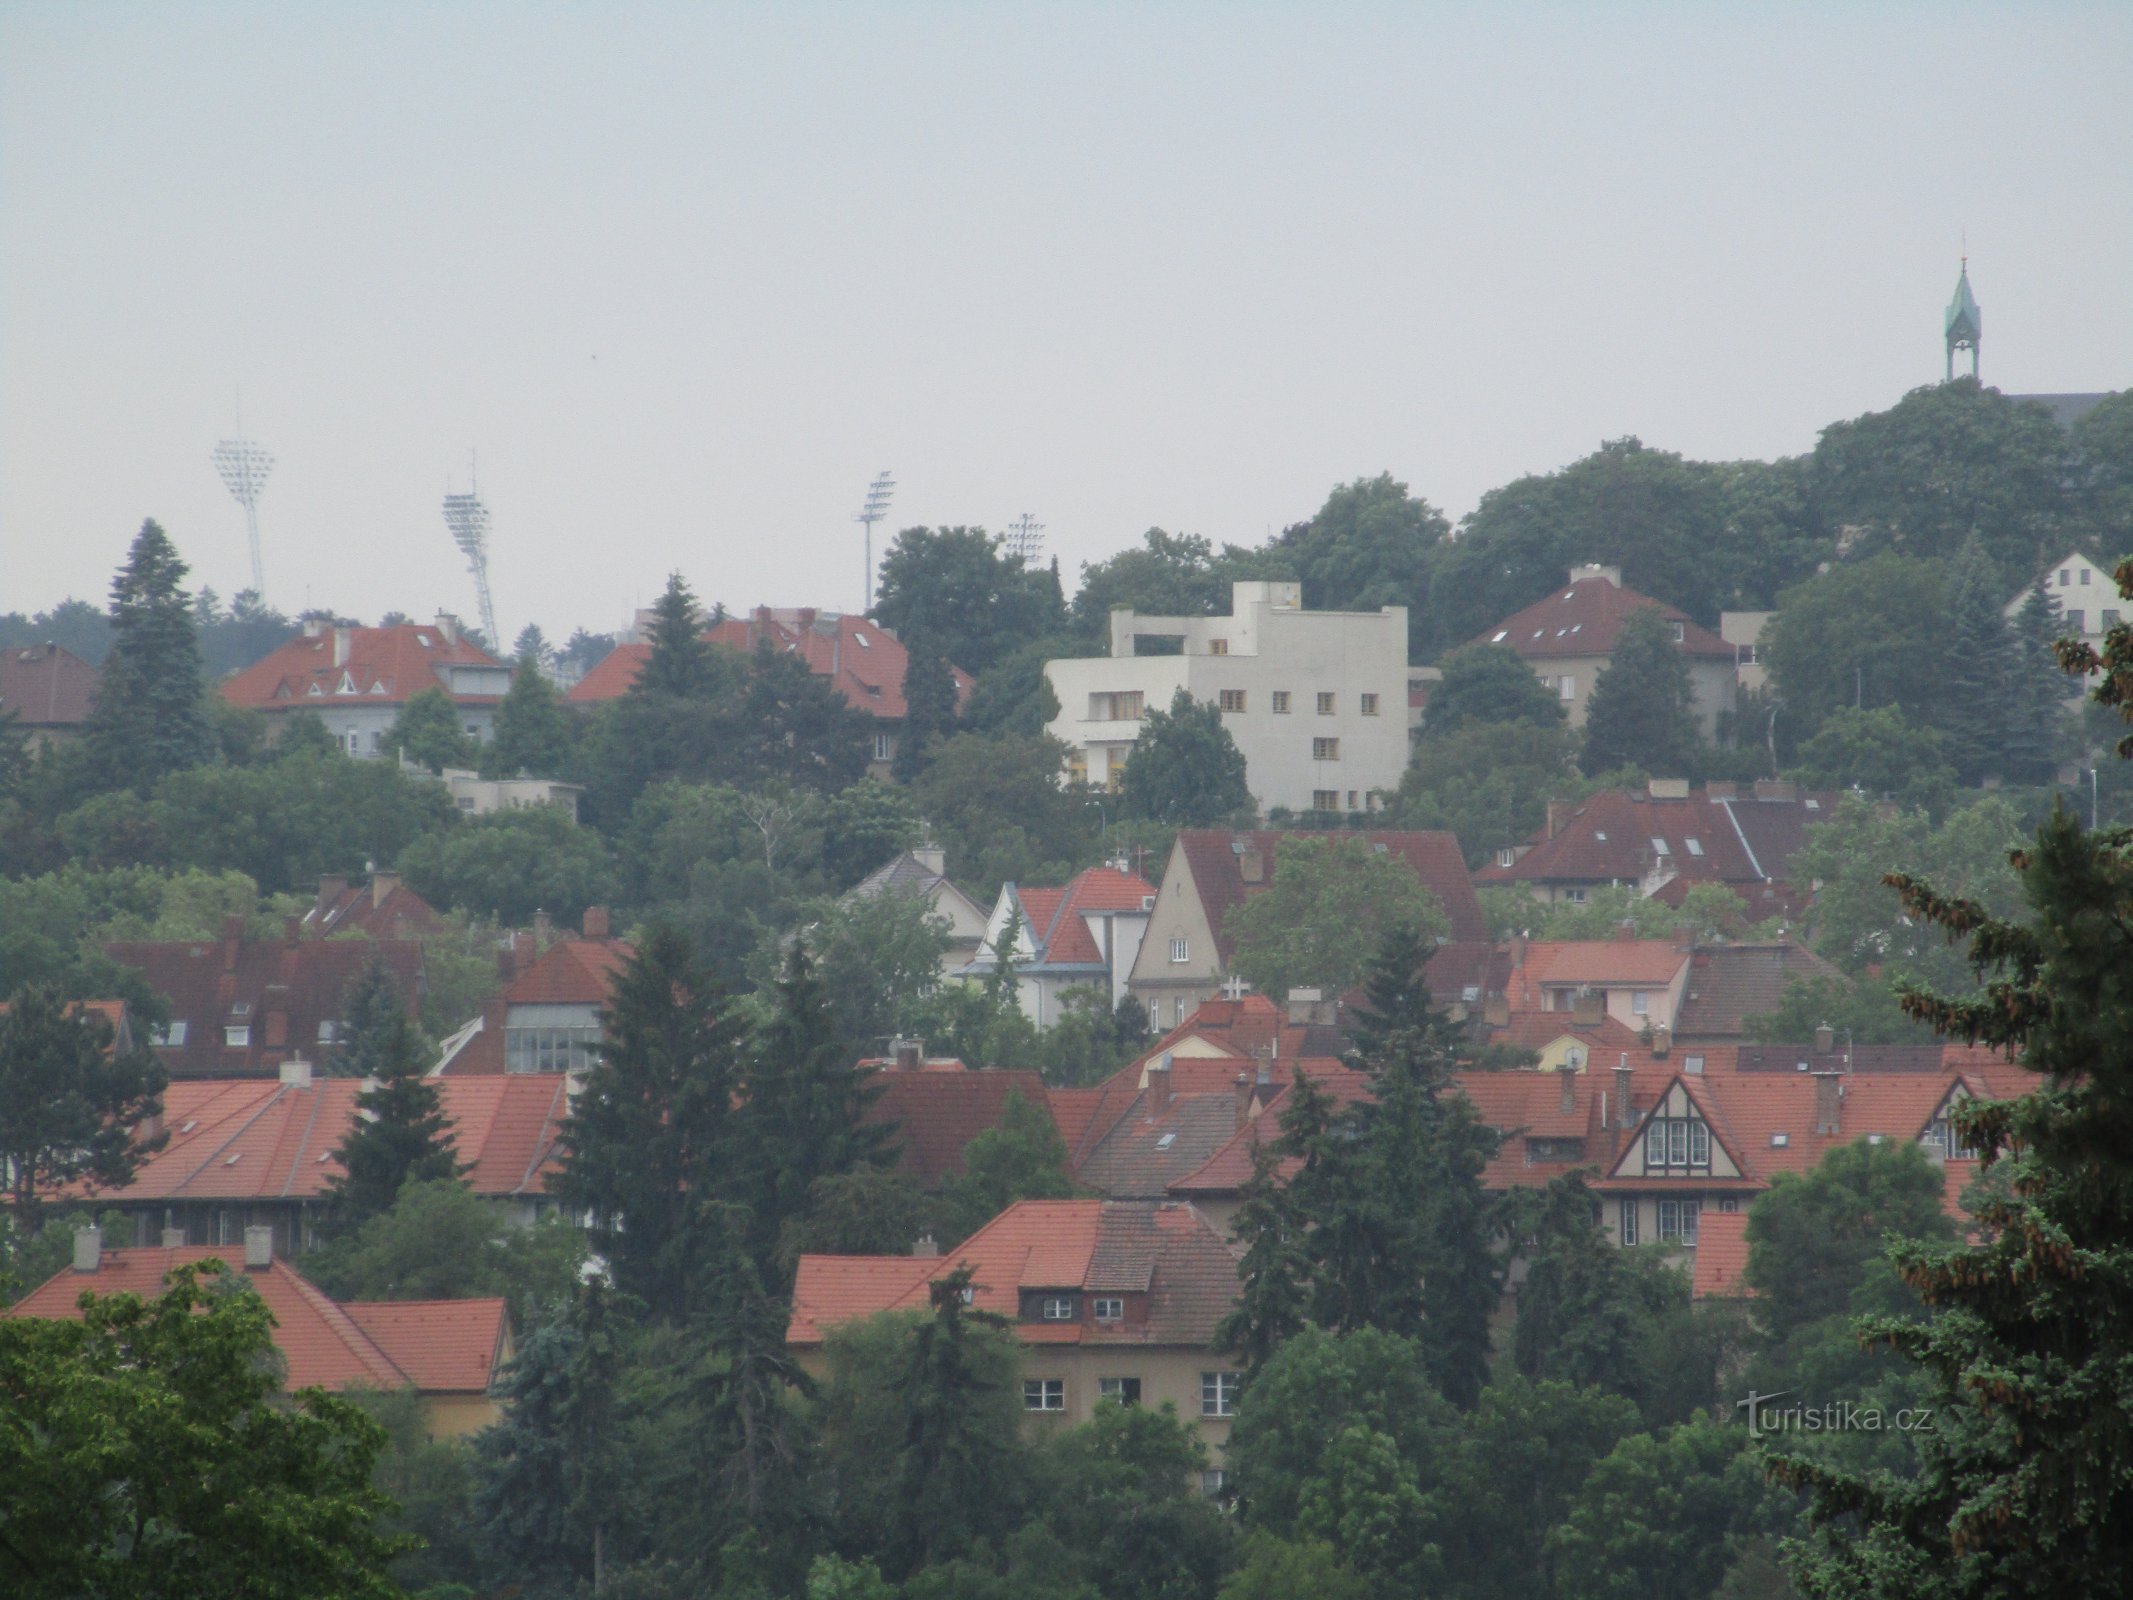 Müllerjeva vila